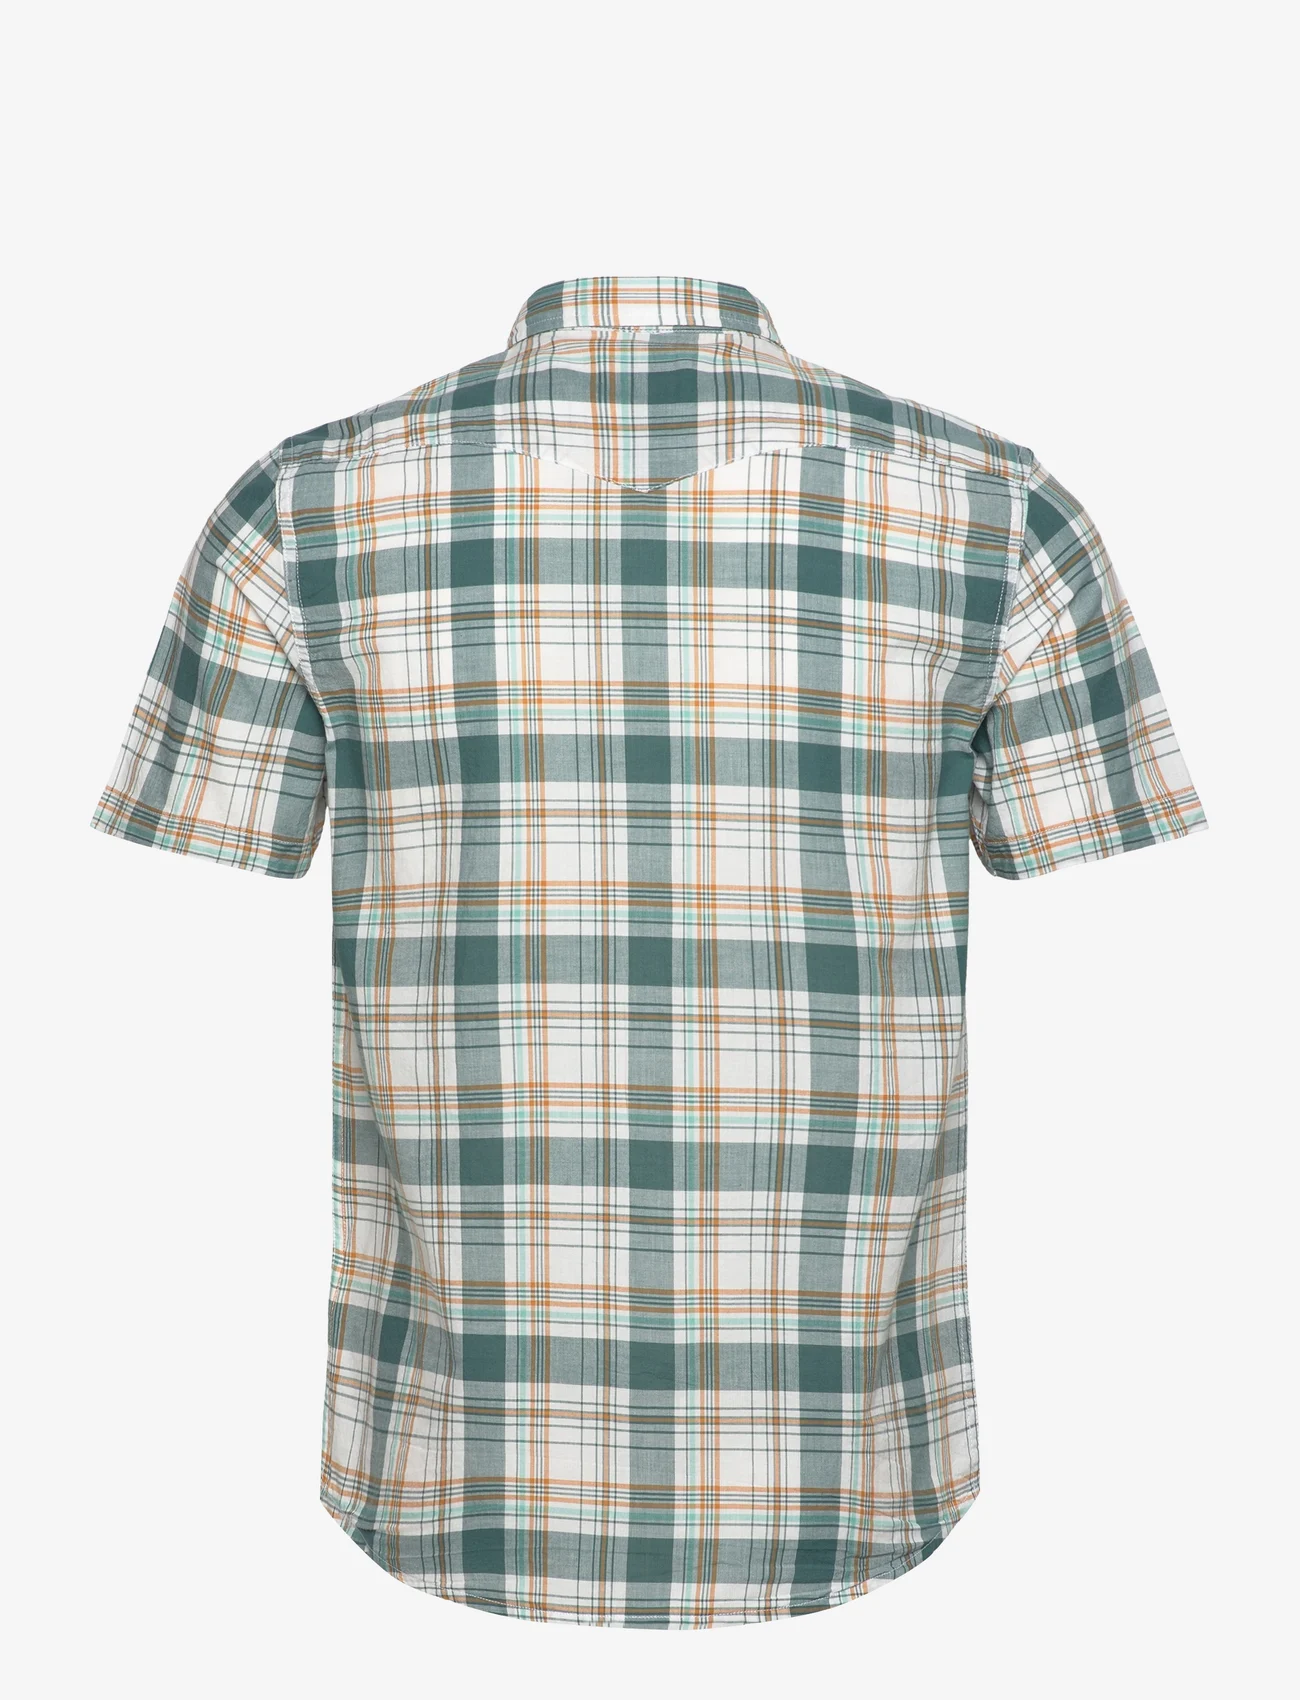 Lee Jeans - SS WESTERN SHIRT - geruite overhemden - evergreen - 1